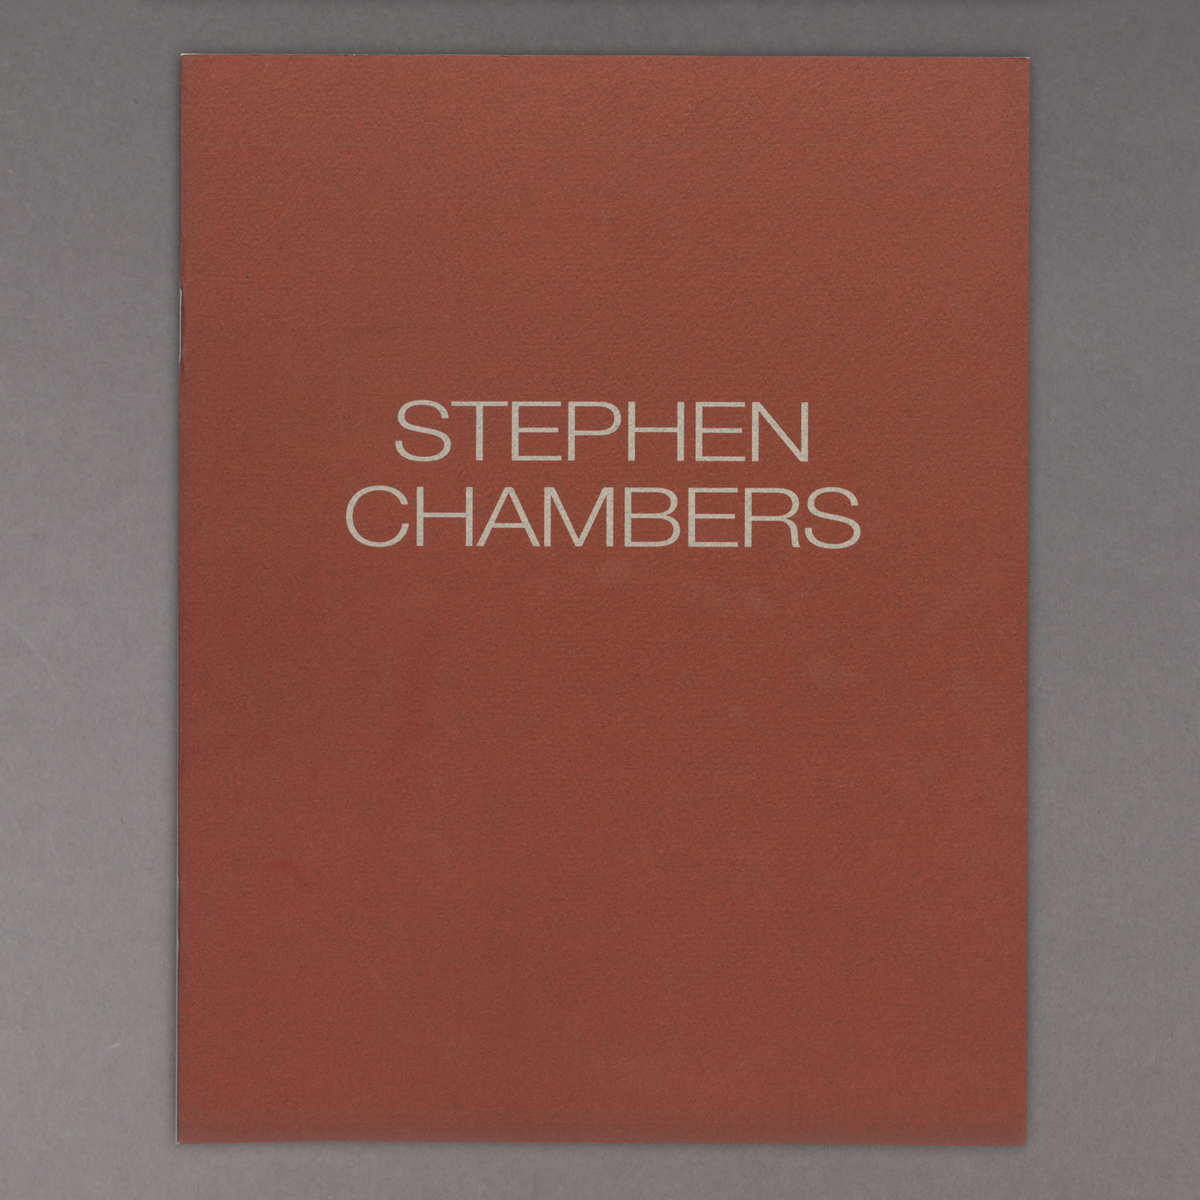 Stephen Chambers